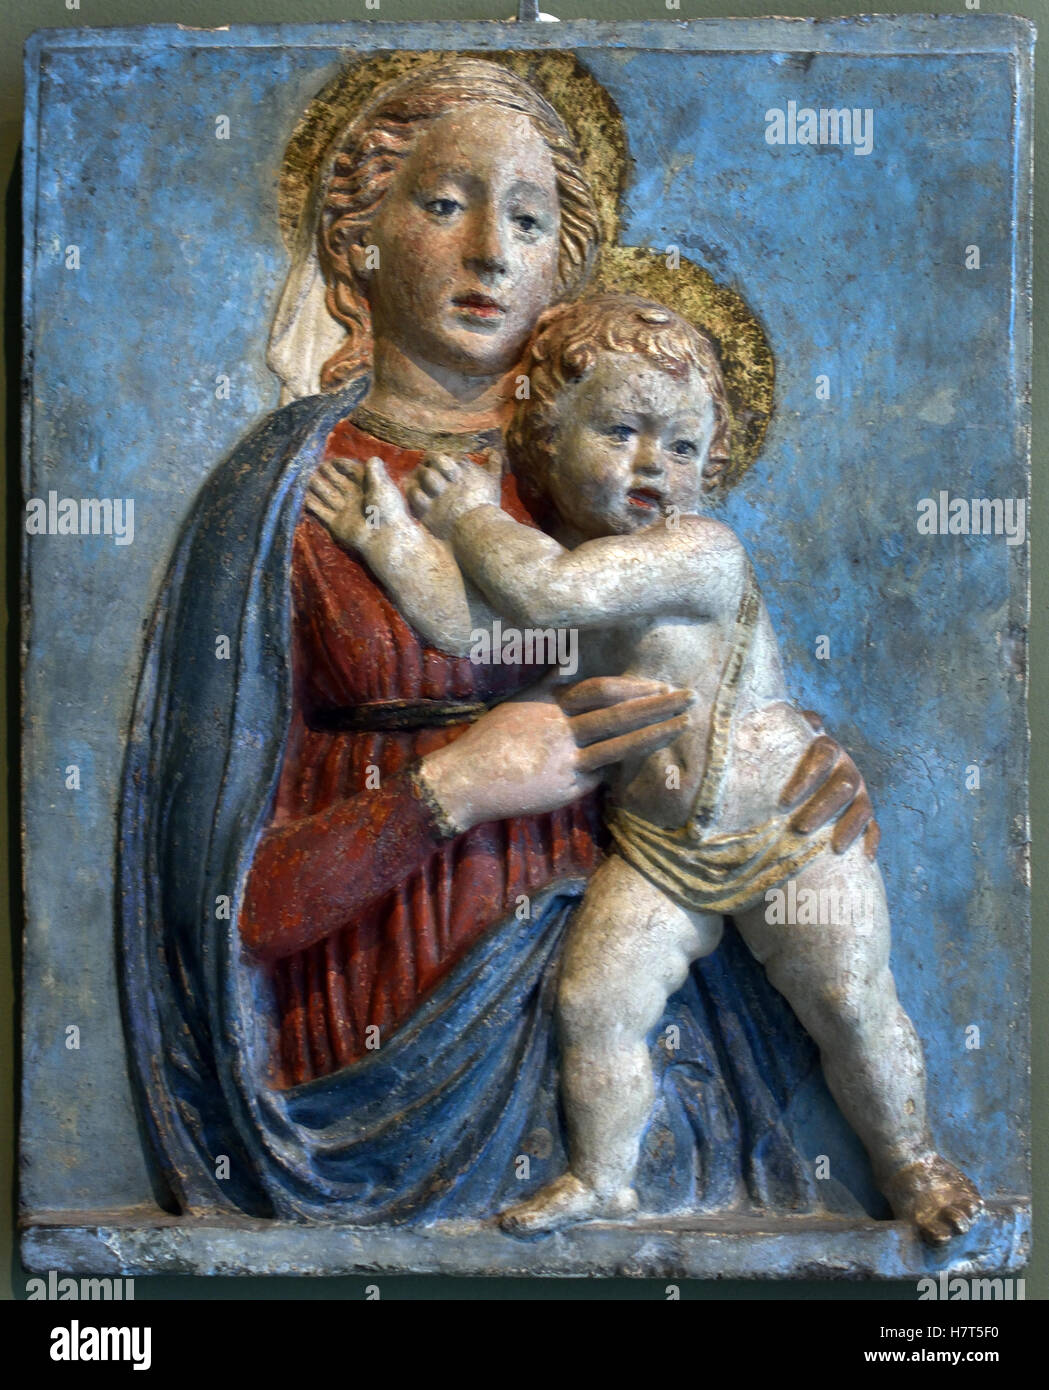 Madonna mit Kind von Andrea di Lazzaro Cavalcanti sagte Buggiano oder Buggianino 1412 - Florenz 1462 italienischer Bildhauer und Architekt, Adoptivsohn des großen Architekten Filippo Brunelleschi. Italien Stockfoto